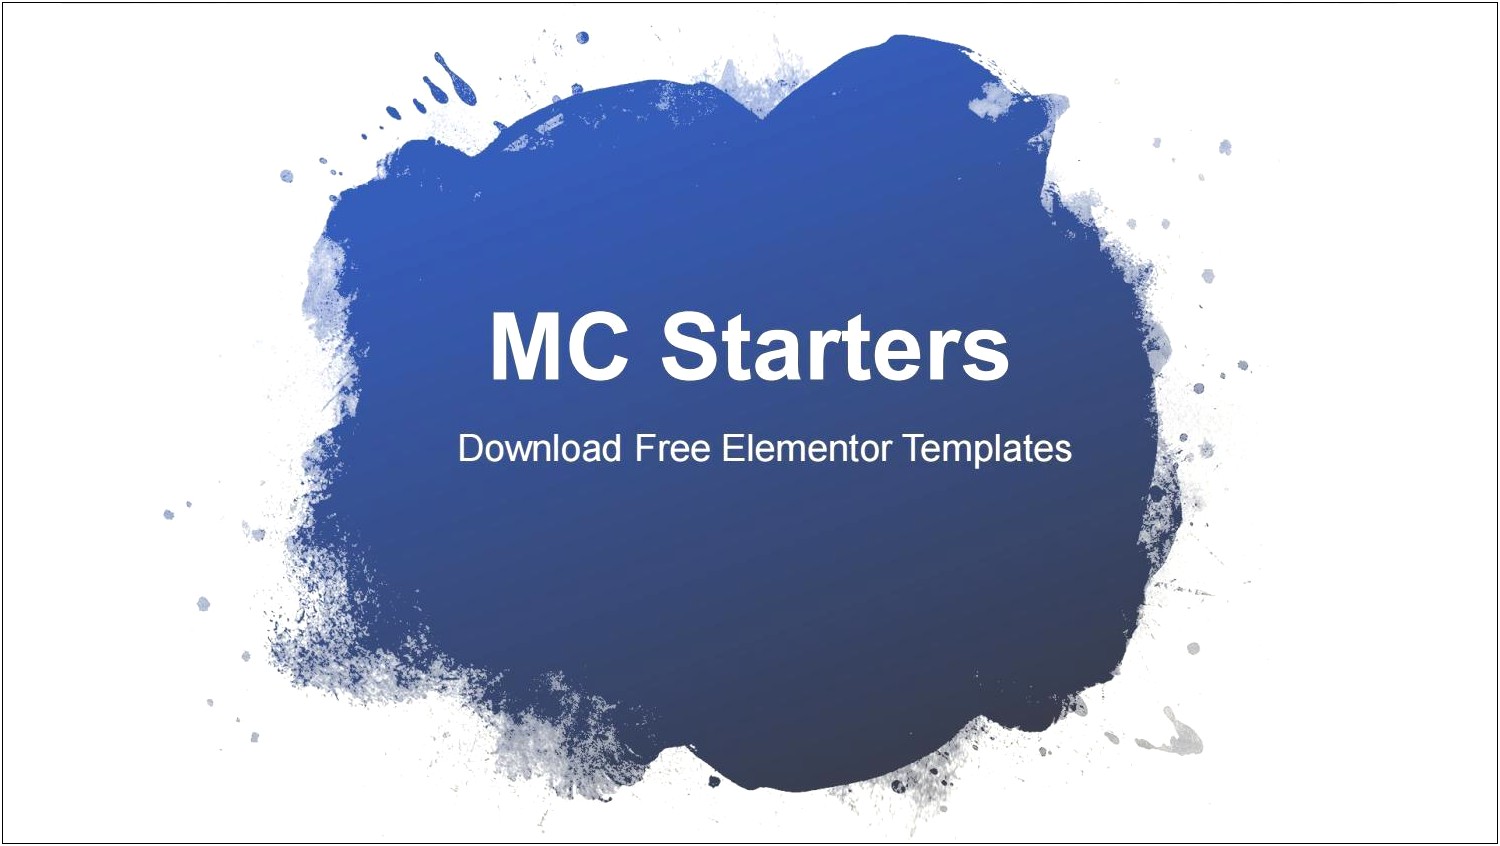 Free Elementor Webinar Landing Page Templates